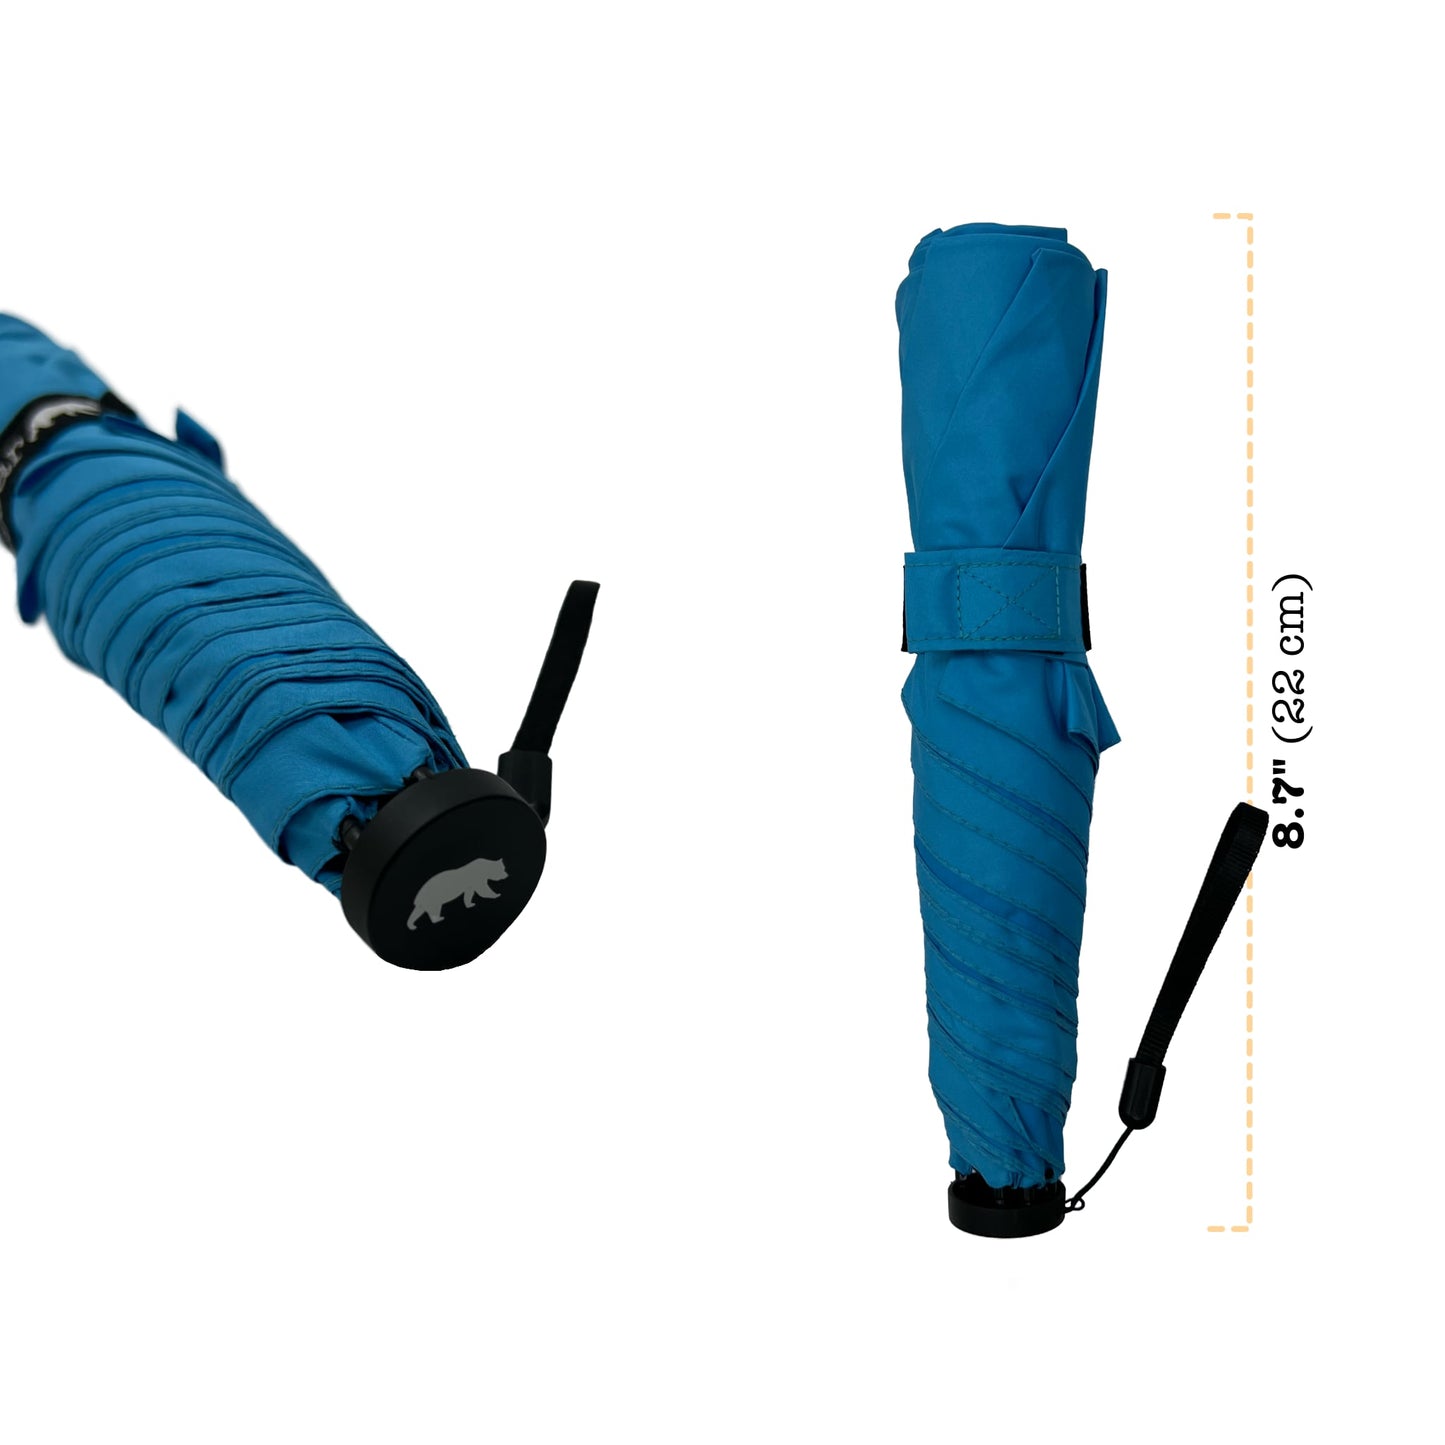 Manual 42-inch Ultra Lightweight Carbon Fiber Ribs Windproof Repellent Umbrella